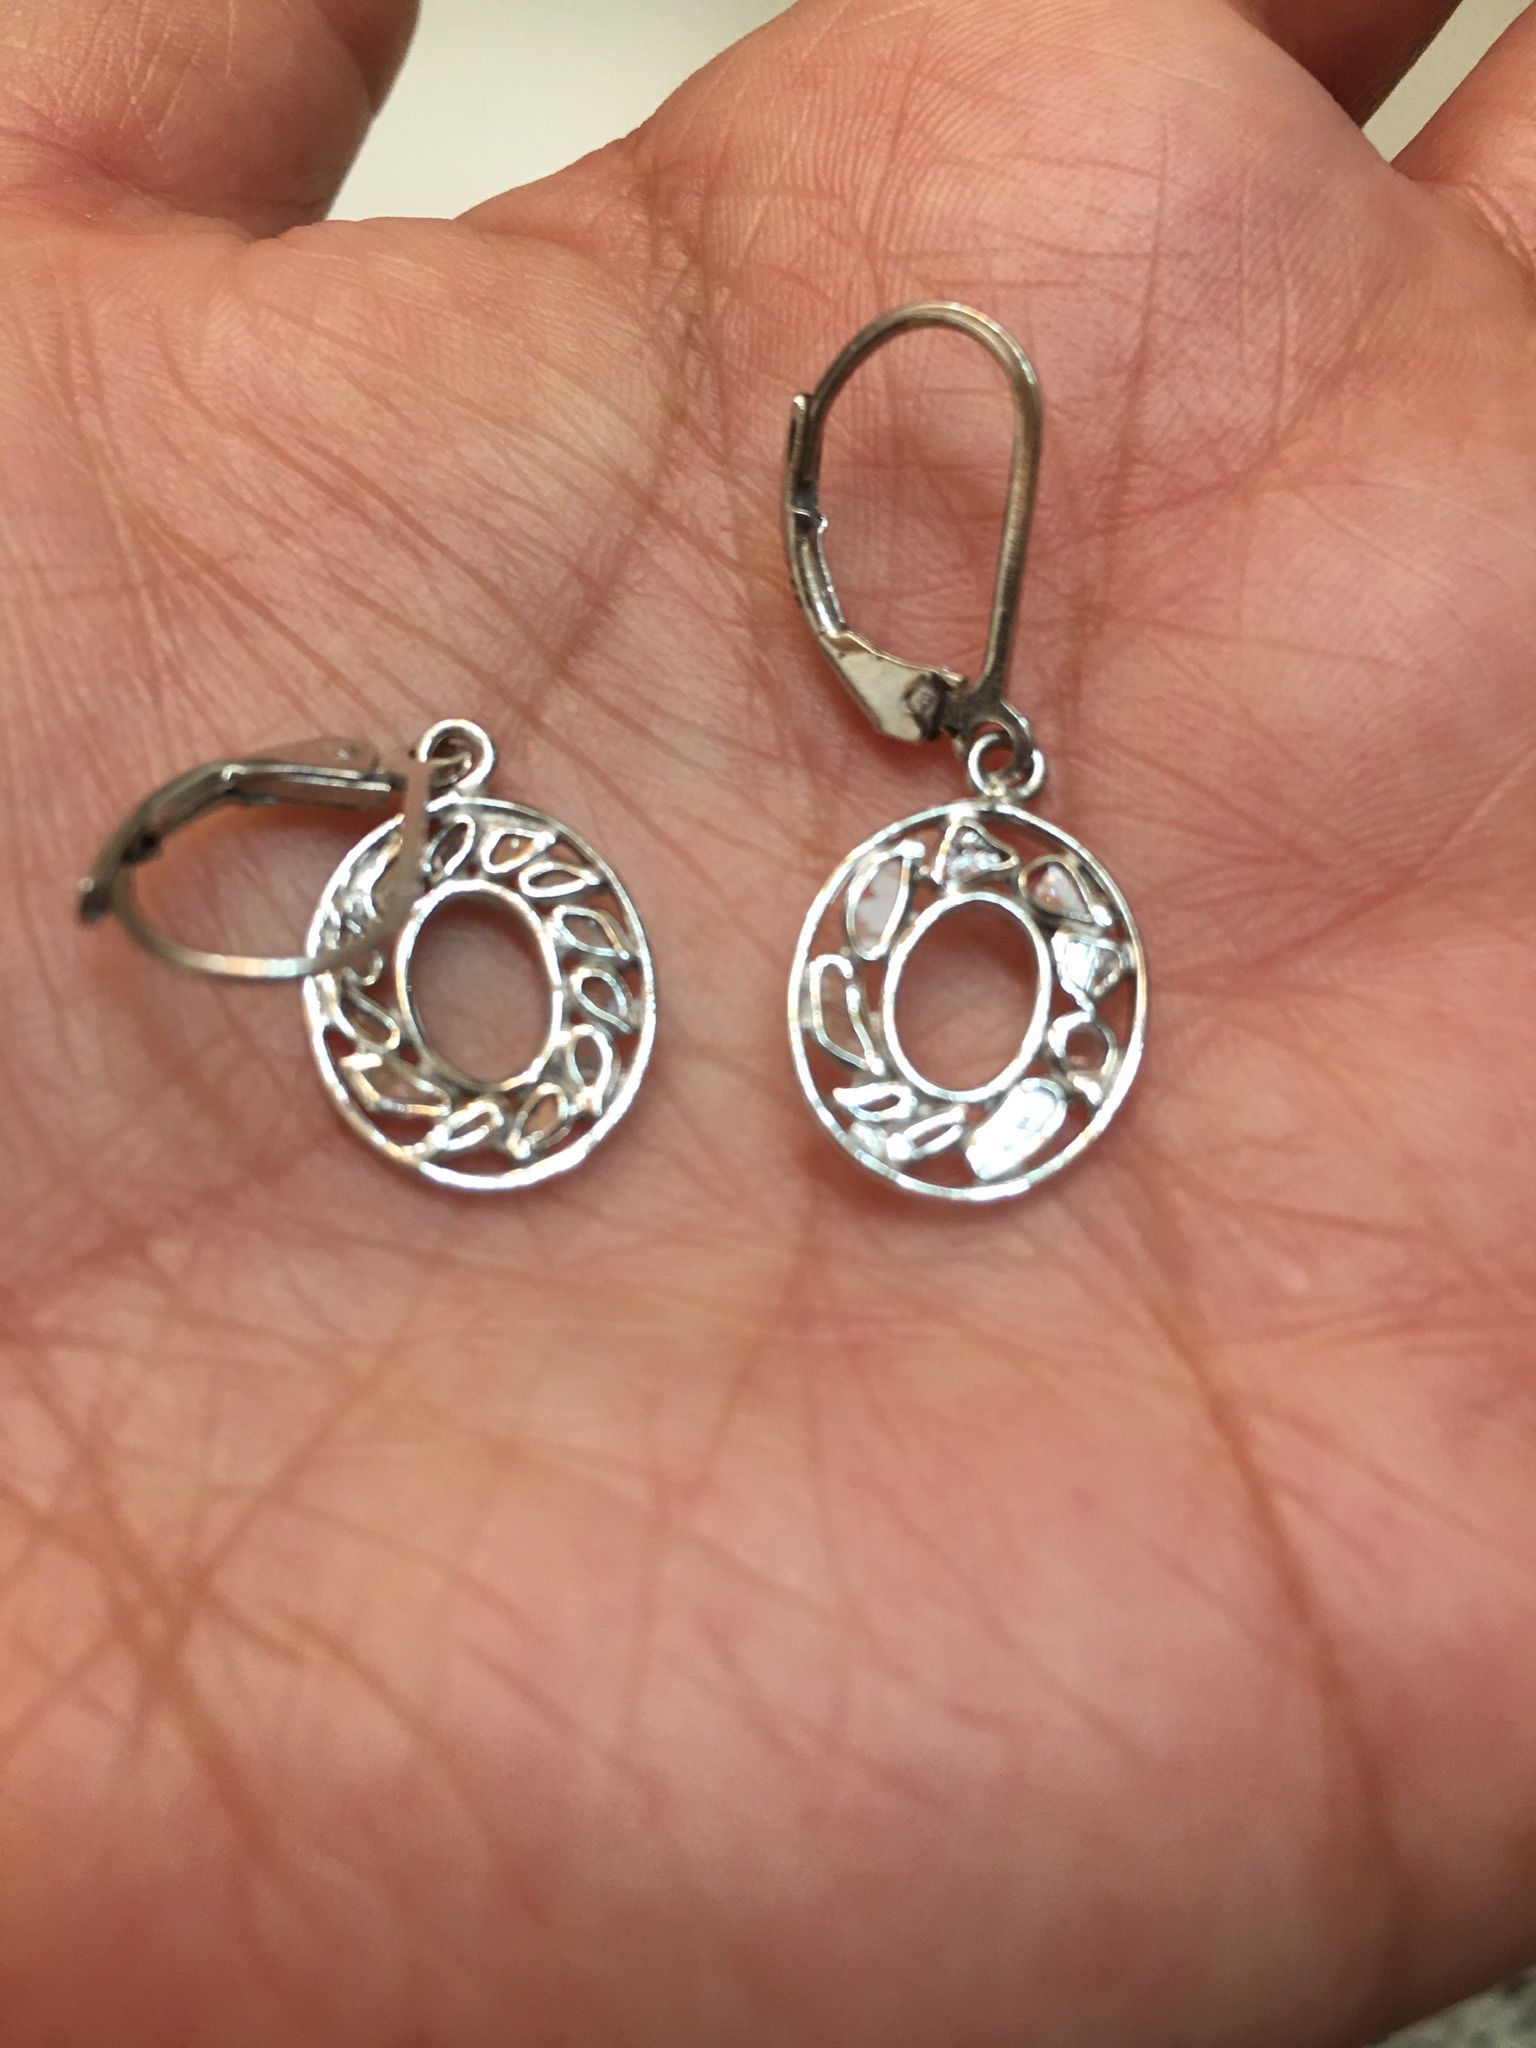 .25 Diamond Round  Shape Sterling Silver Earrings 